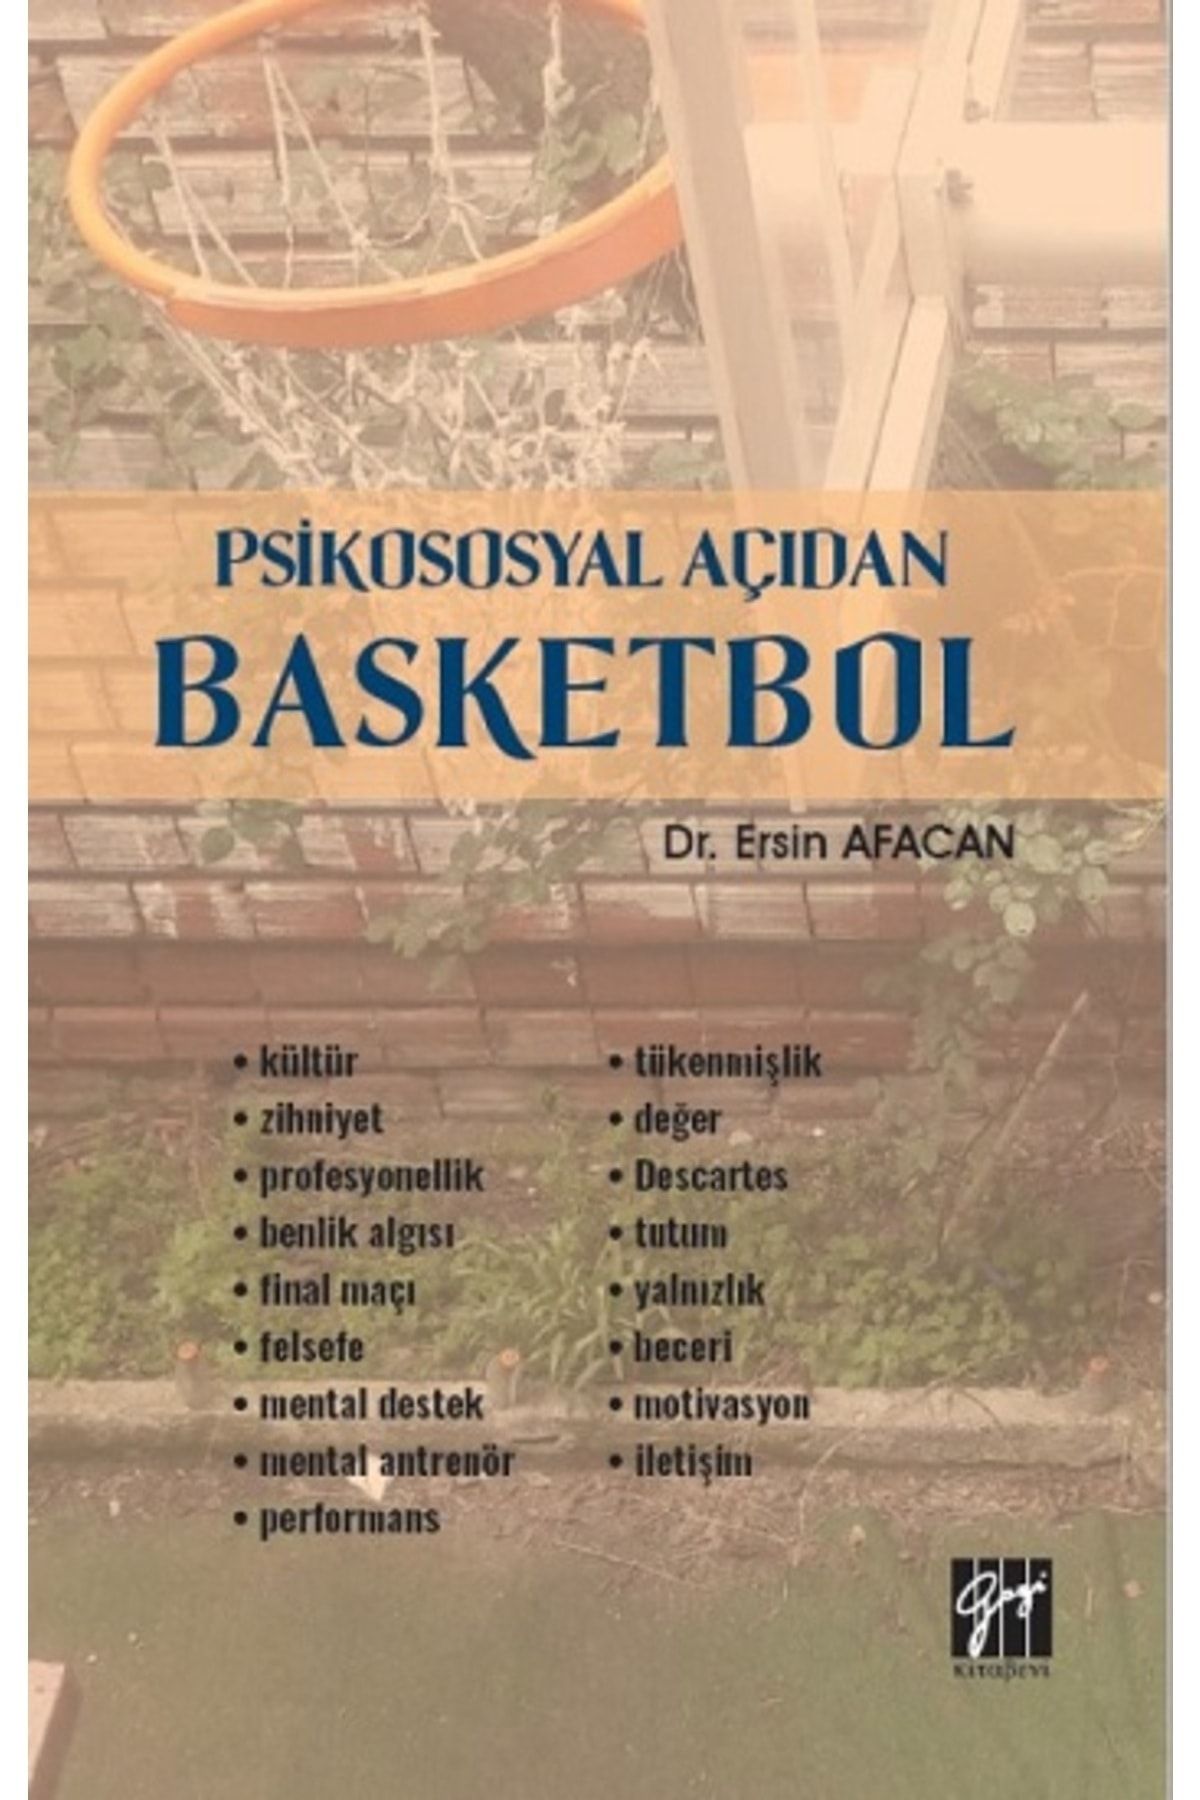 Gazi Kitabevi Psikososyal Açıdan Basketbol kitabı - Ersin Afacan - Gazi Kitabevi